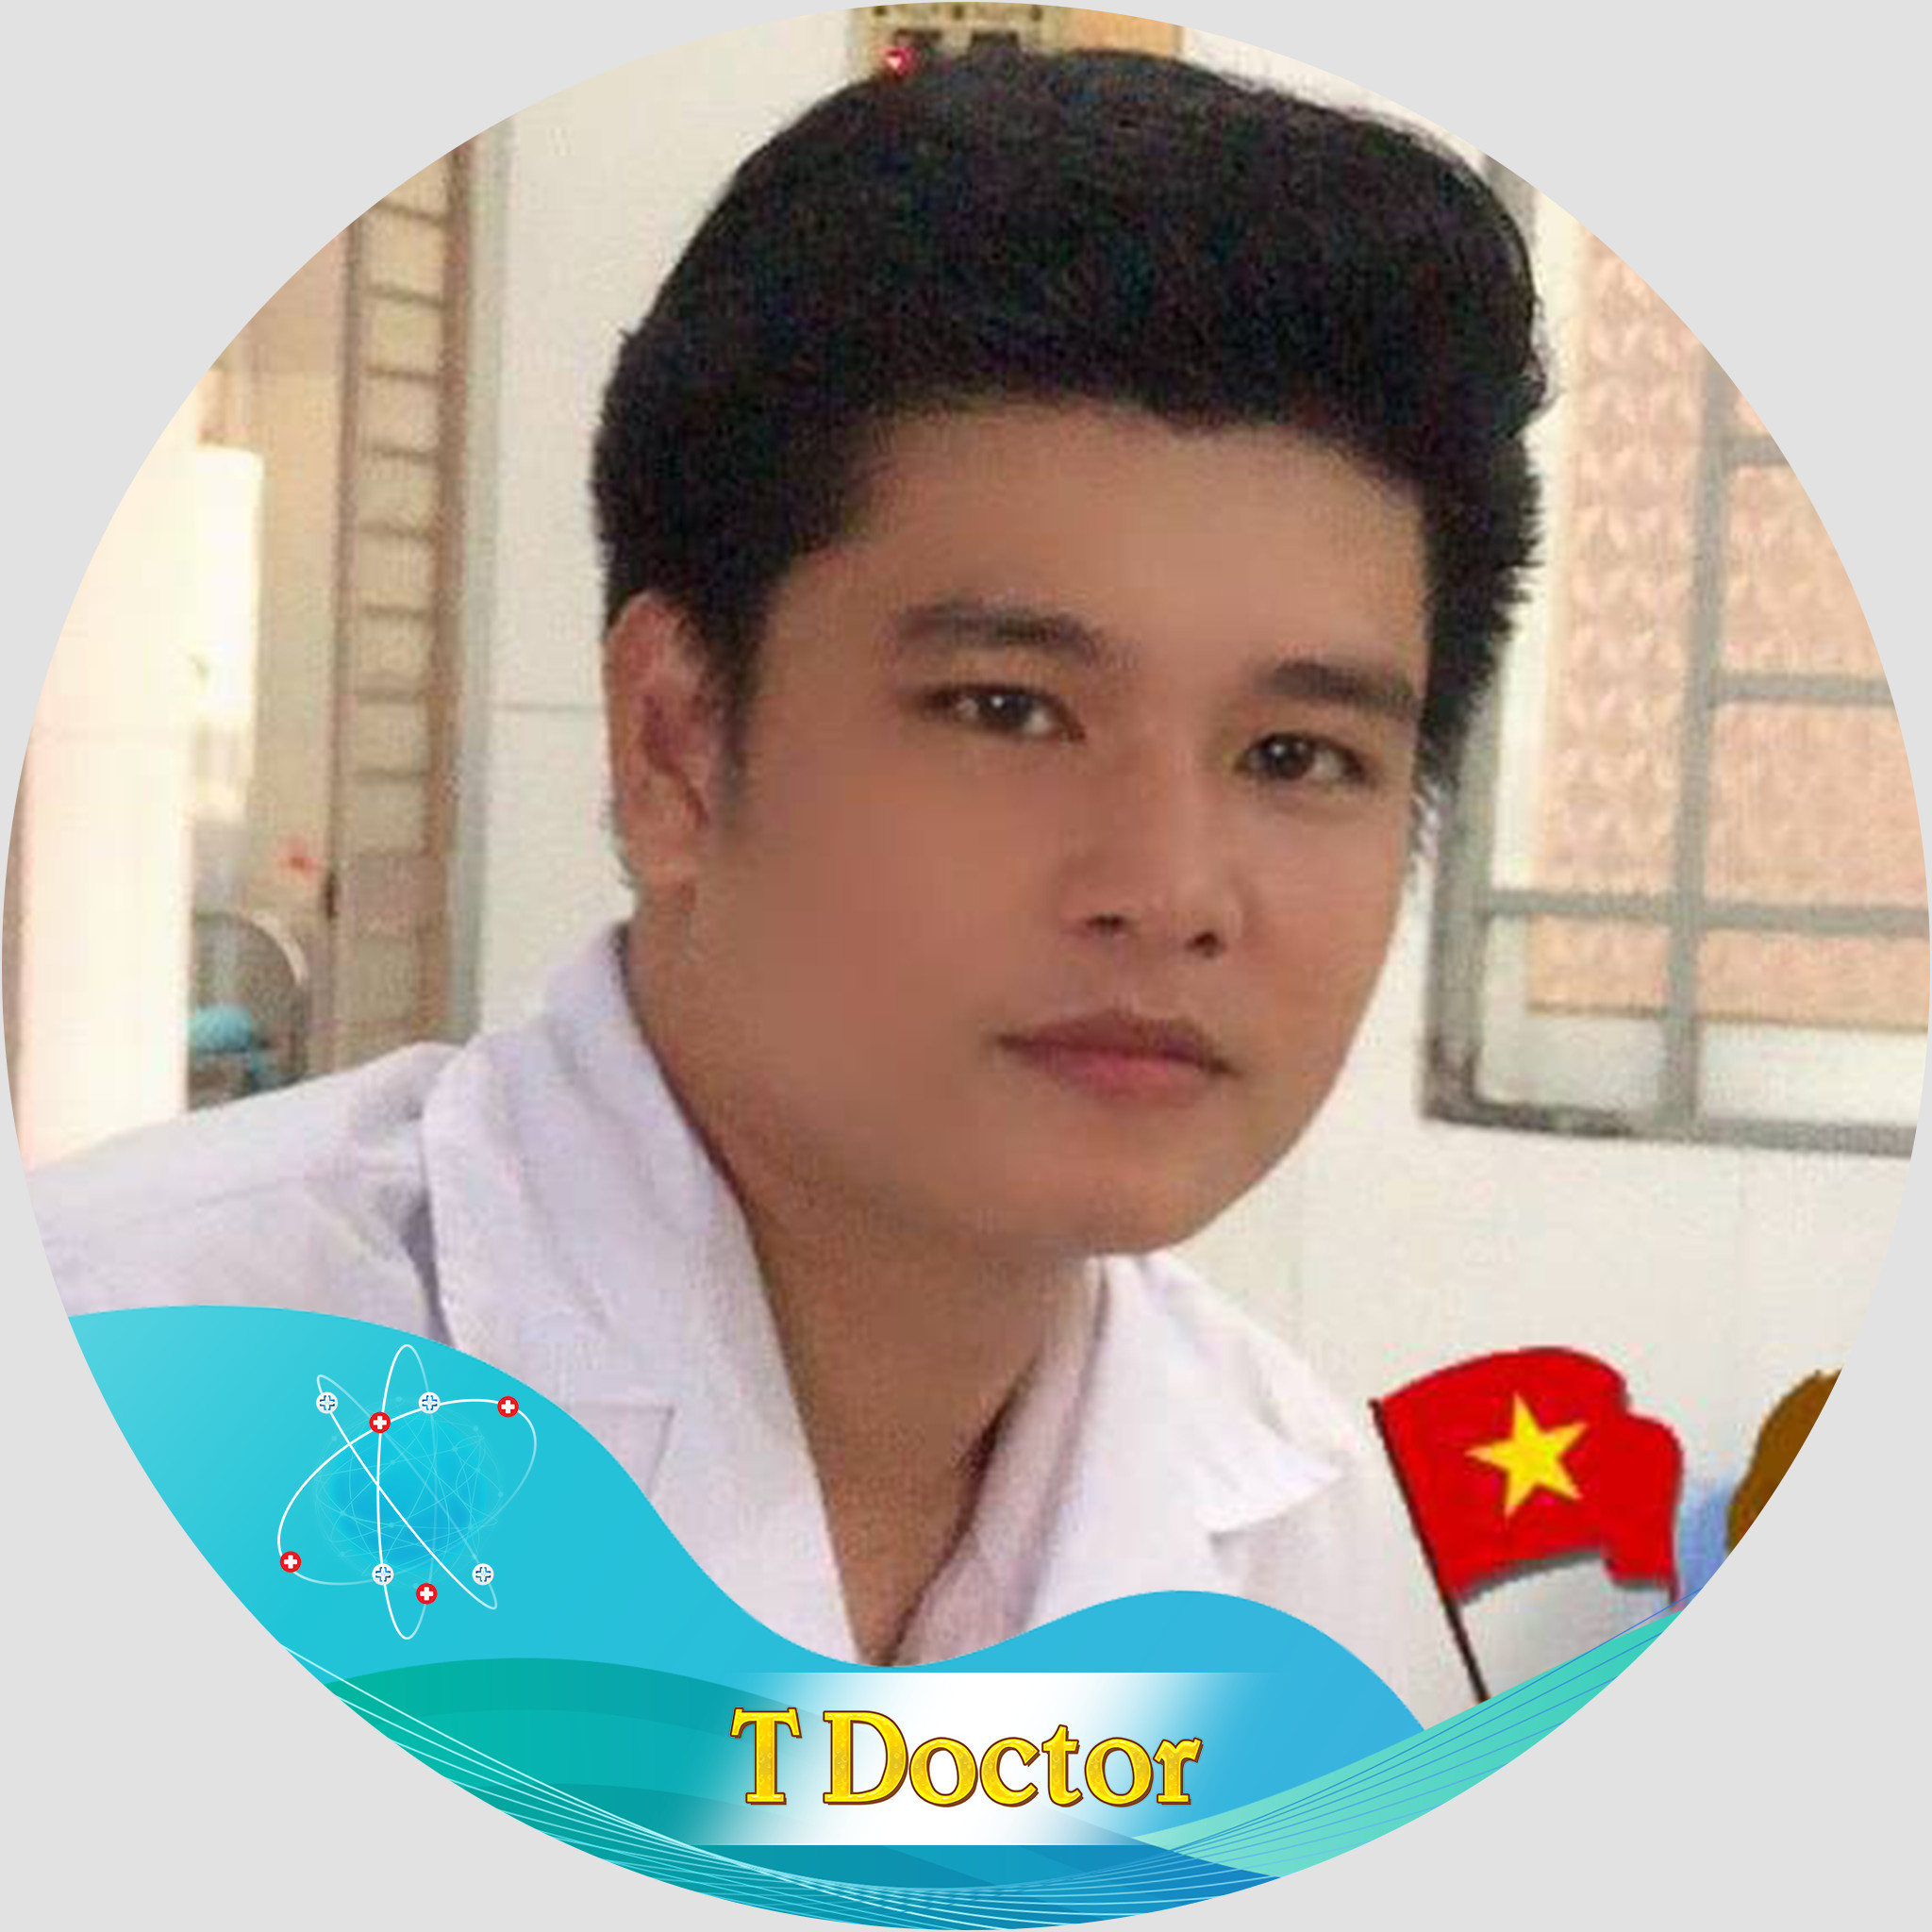 Bác sĩ Ck1 Nguyễn Thành Đạt